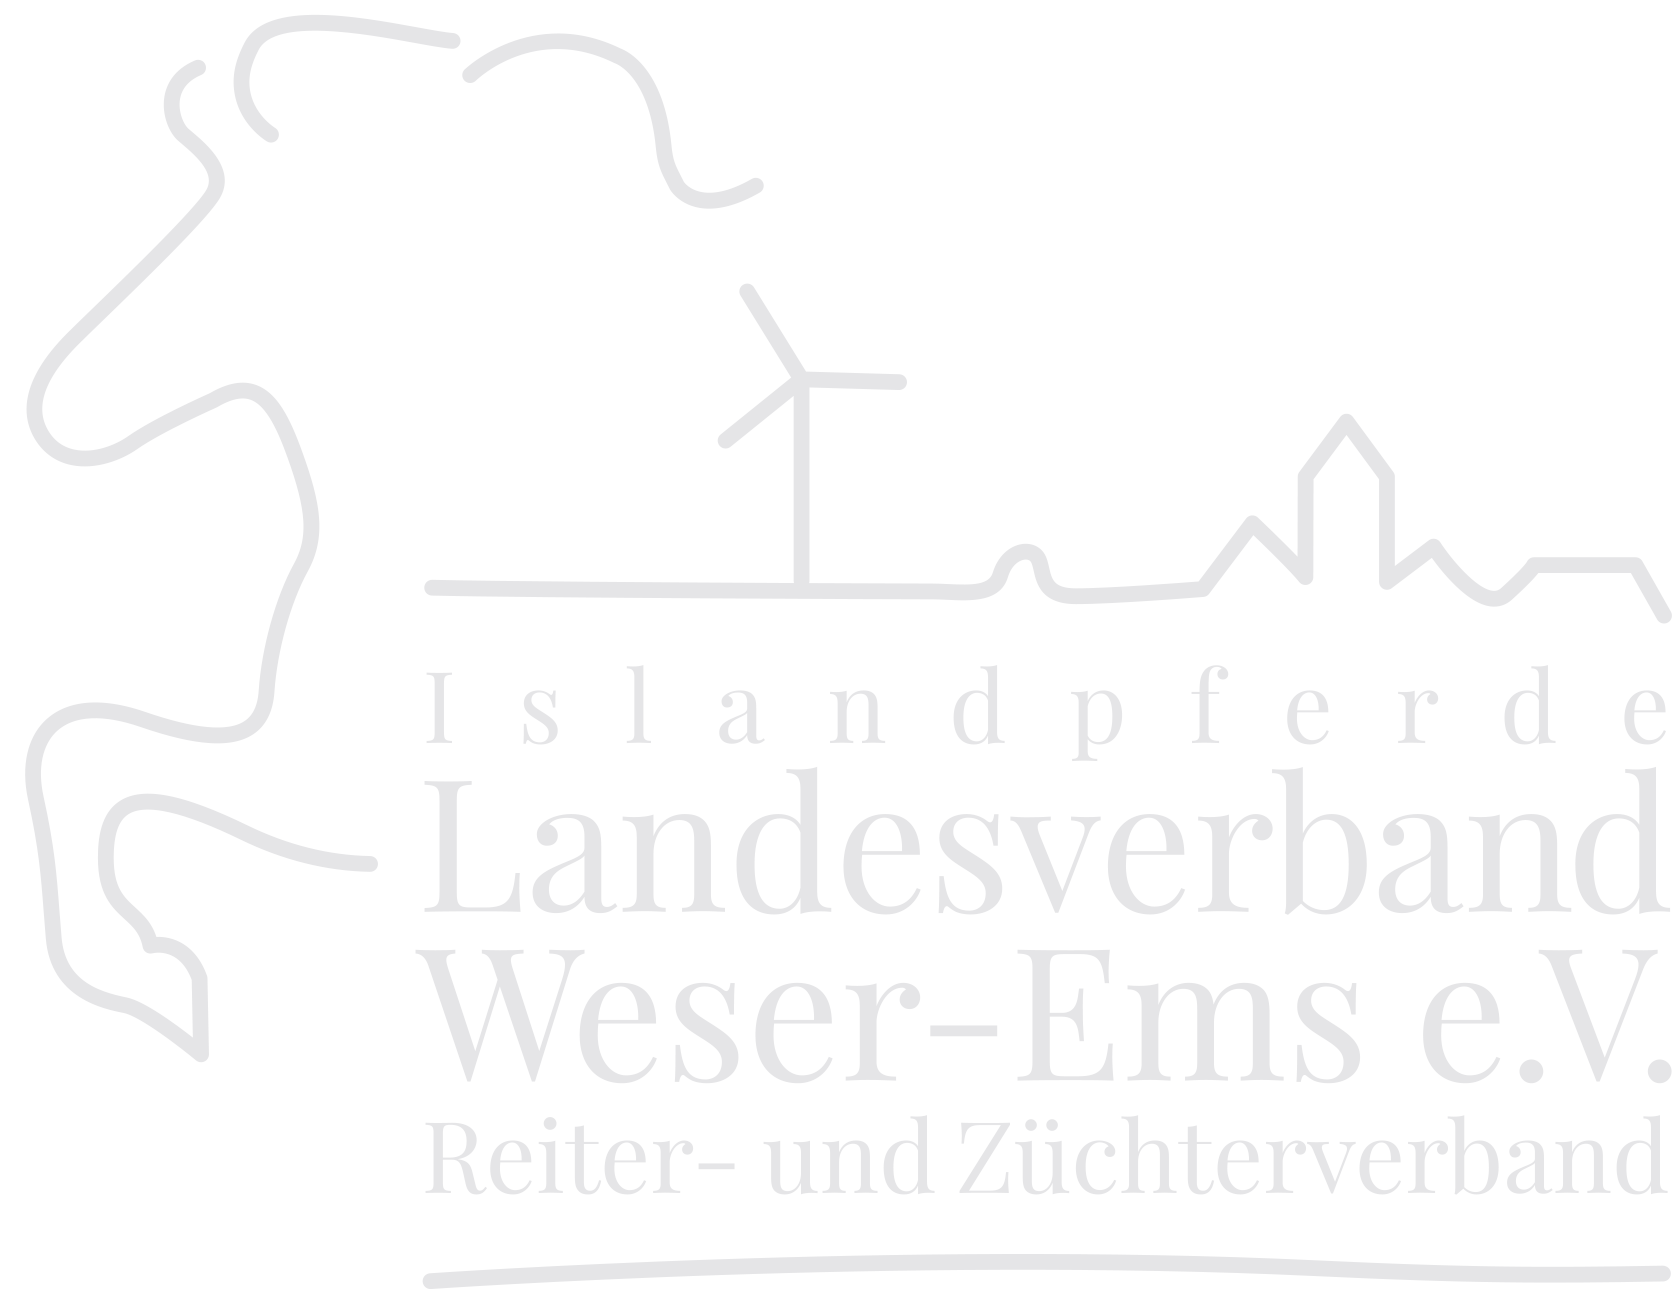 IPZV Landesverband Weser-Ems e.V. 